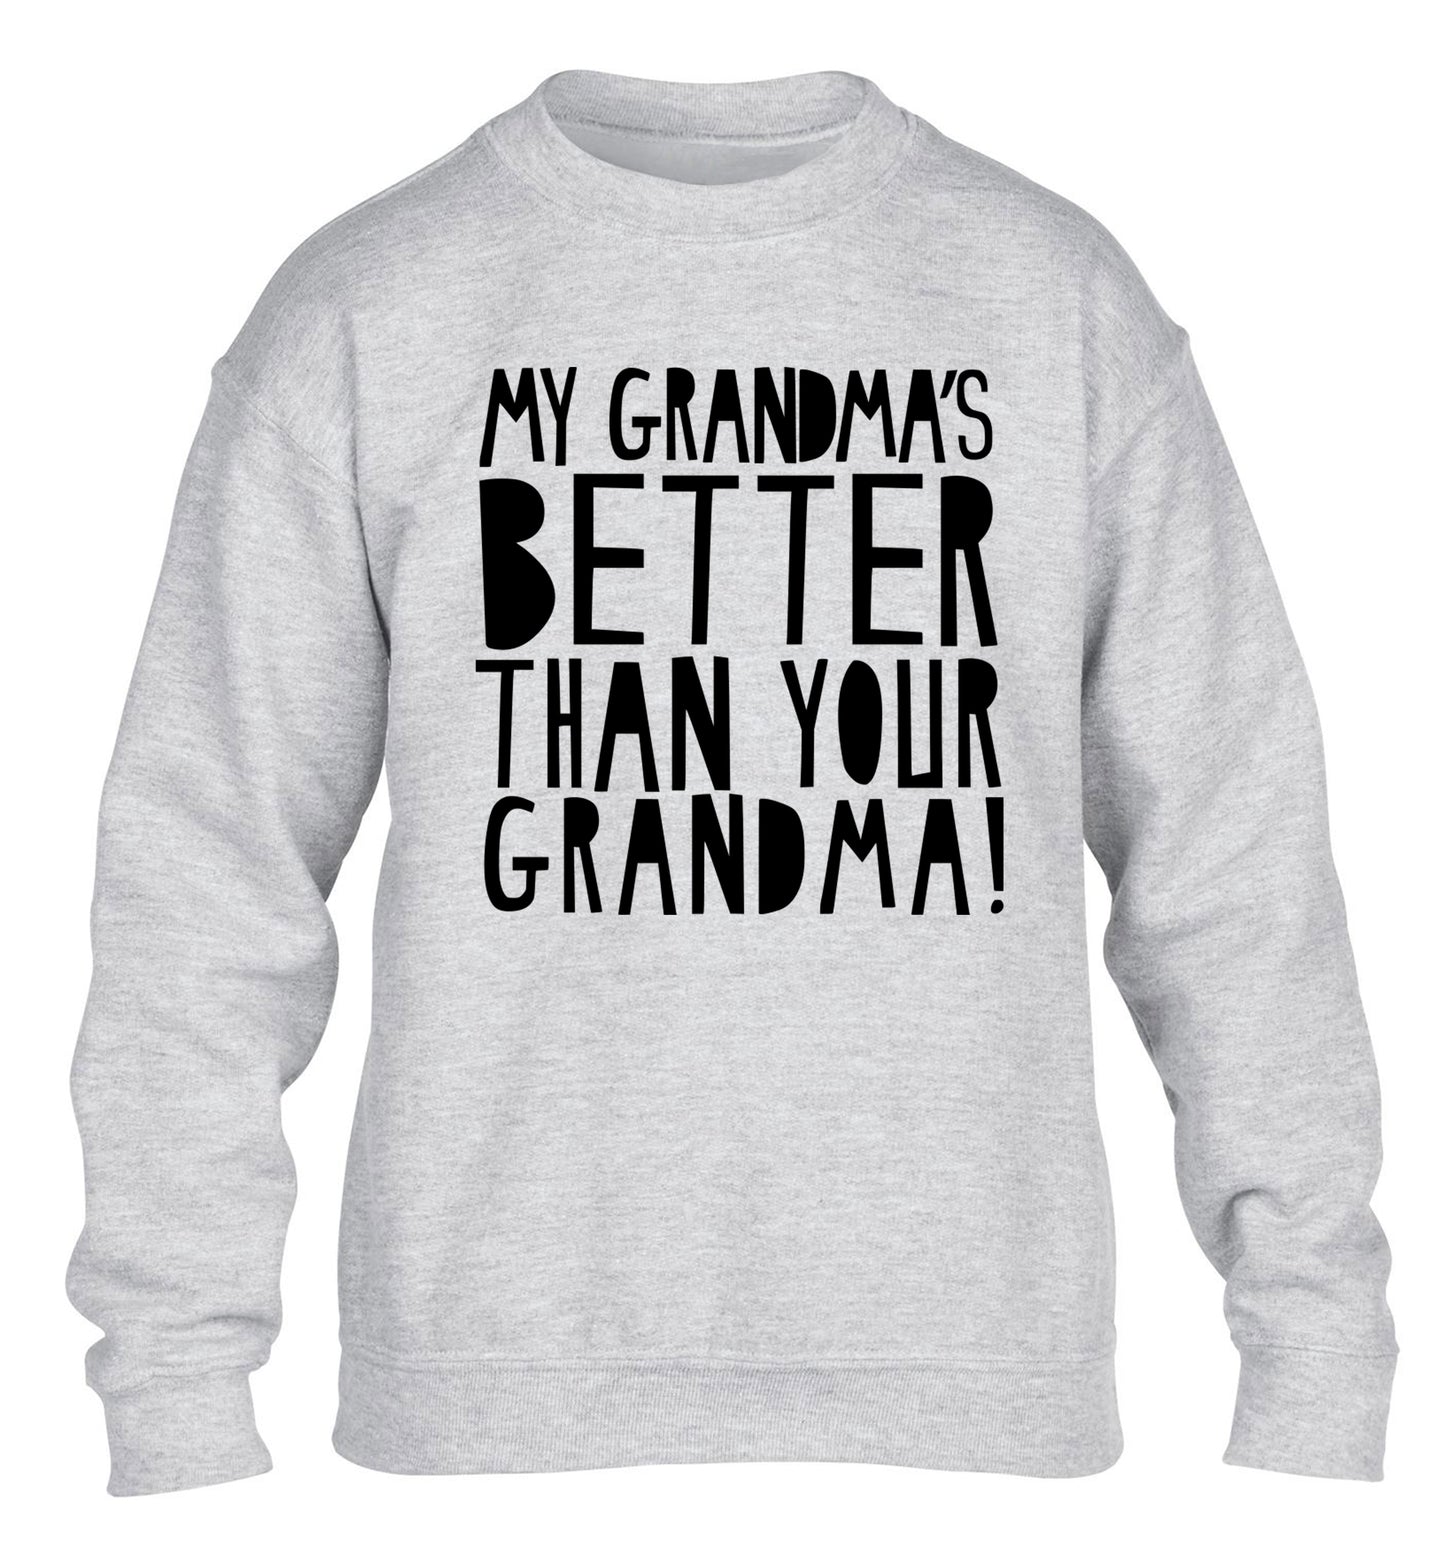 My grandma's better than your grandma children's grey sweater 12-13 Years